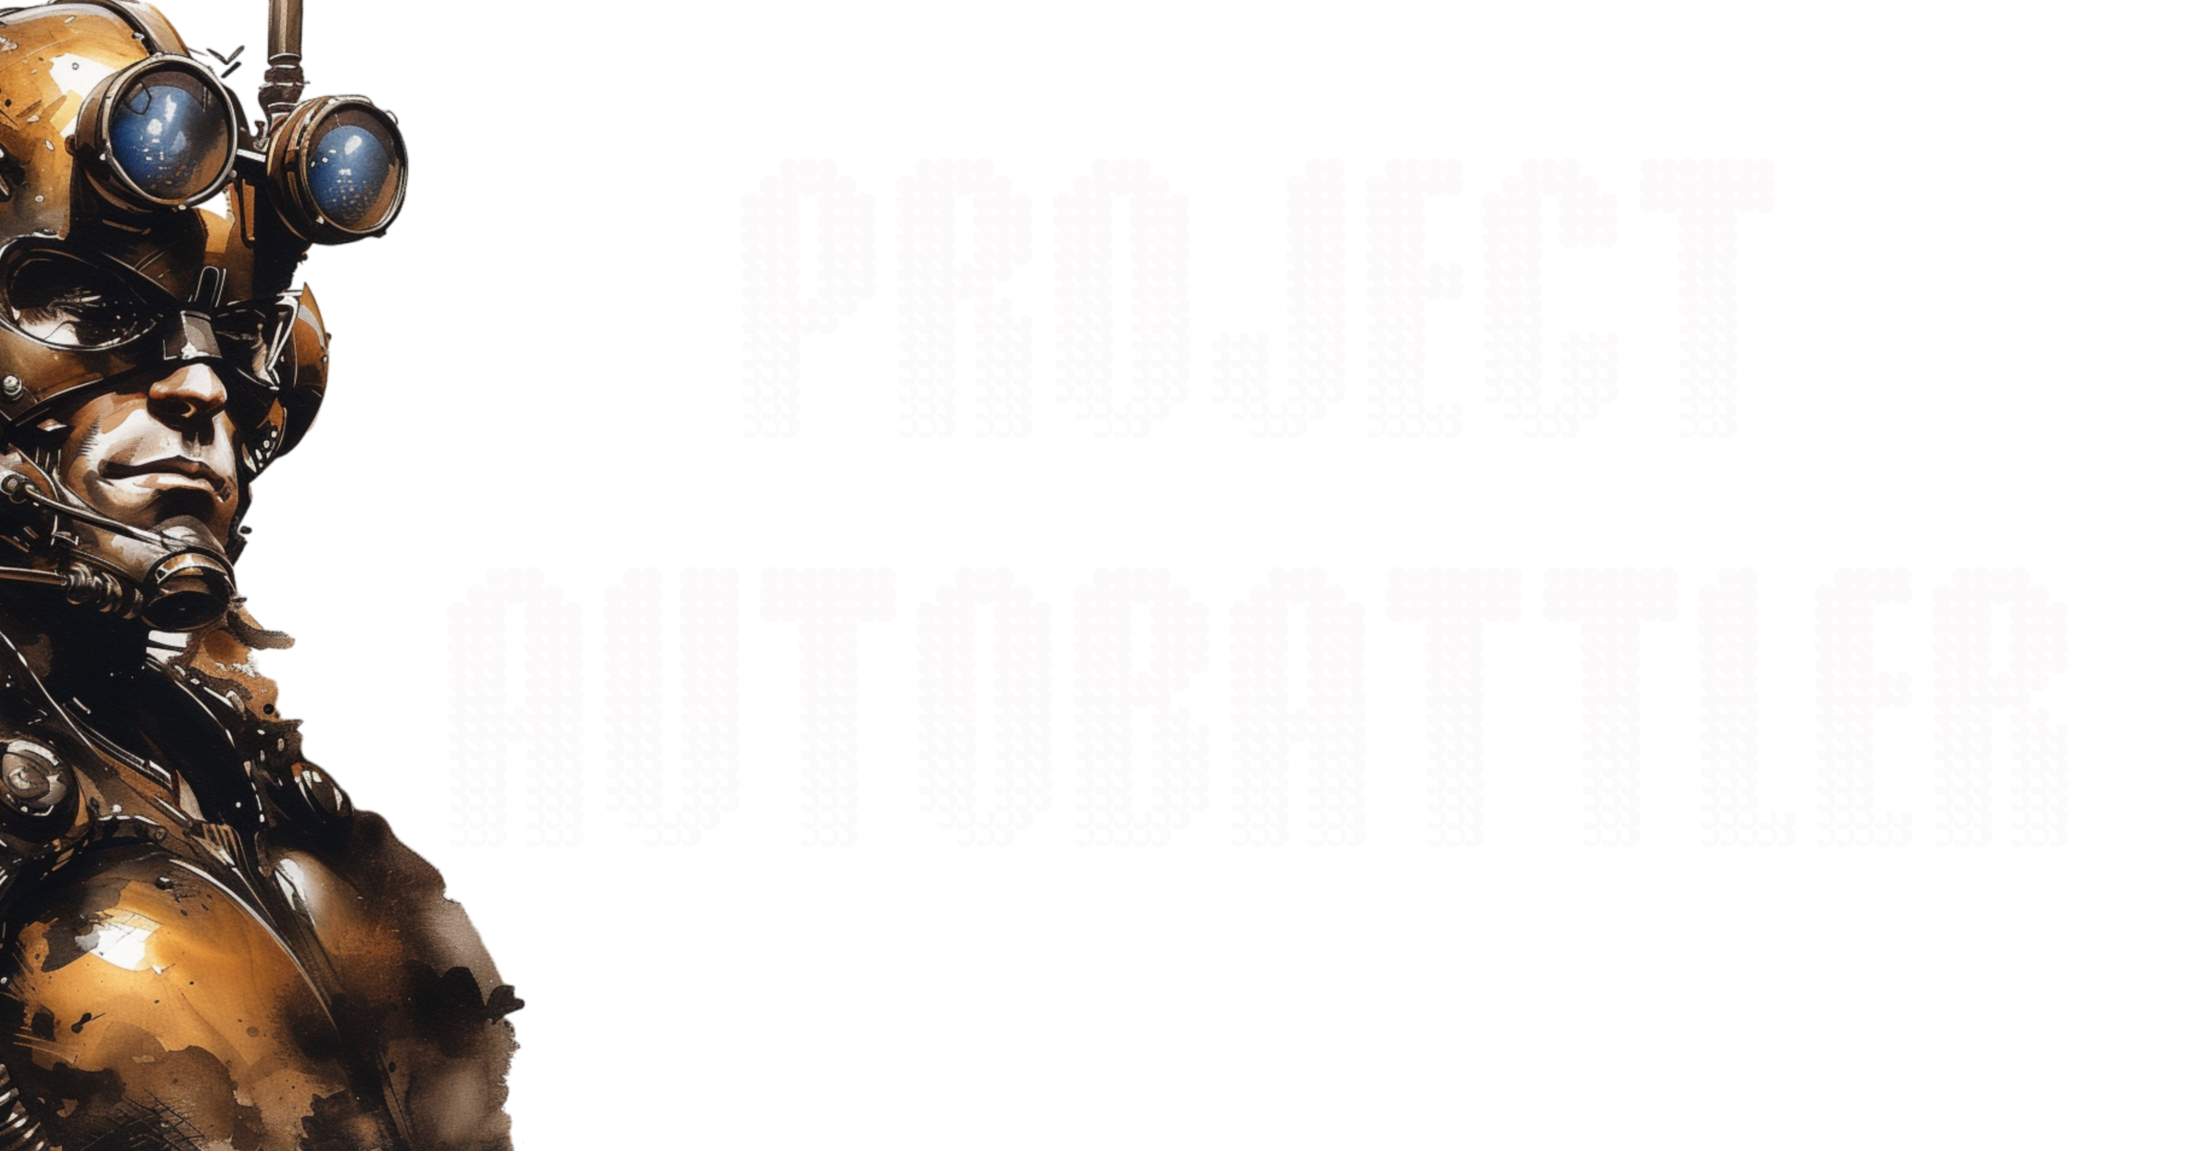 Project Autobattler